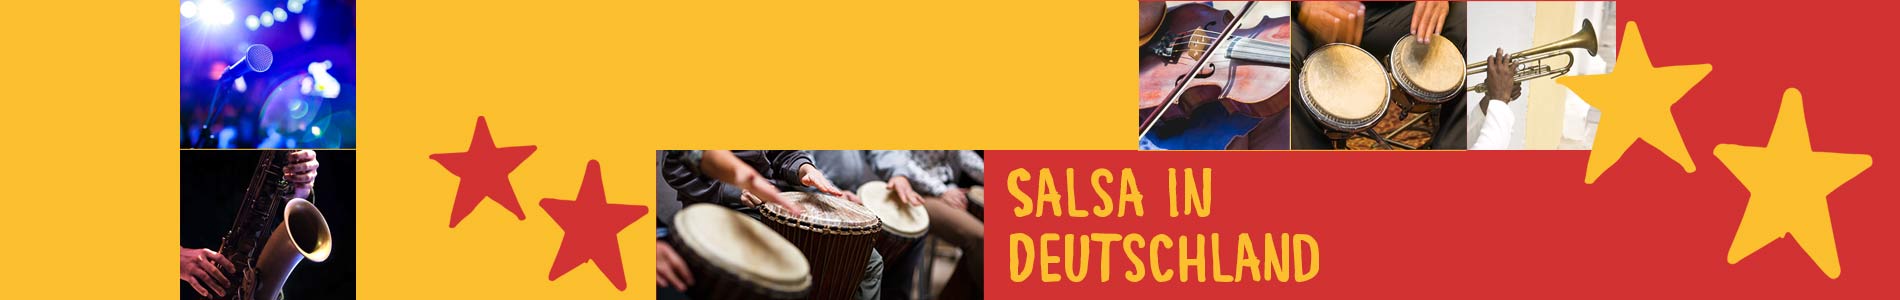 Salsa in Breese – Salsa lernen und tanzen, Tanzkurse, Partys, Veranstaltungen